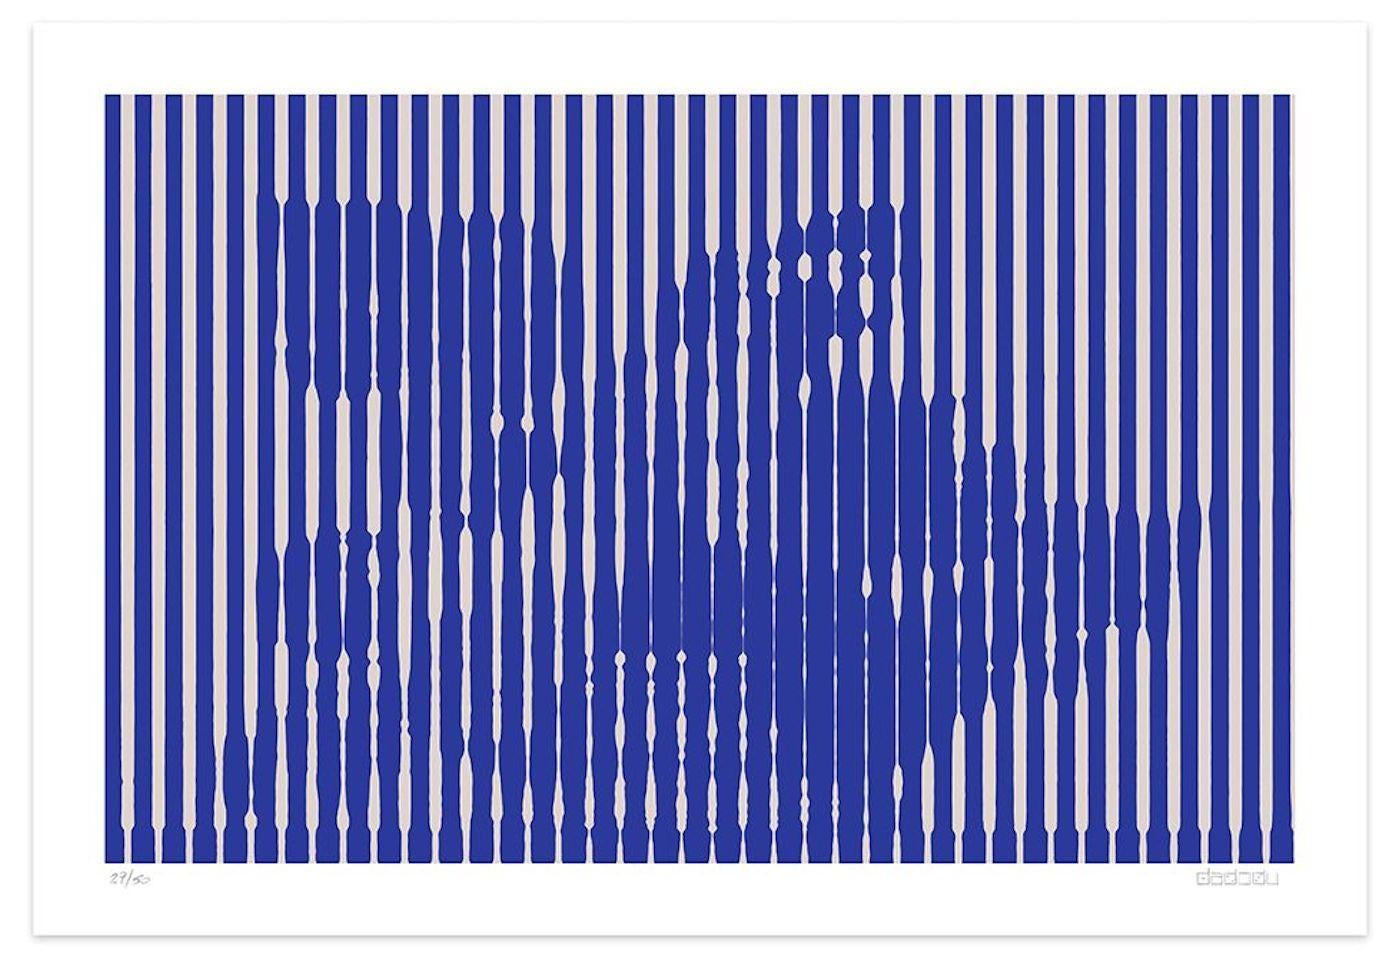 Dimensions de l'image : 60 x 92,9 cm.

Grey Lines est une impression giclée exceptionnelle réalisée par l'artiste contemporain Dadodu en 2016.

Cette œuvre d'art originale représente une nature morte avec des lignes verticales grises sur un fond